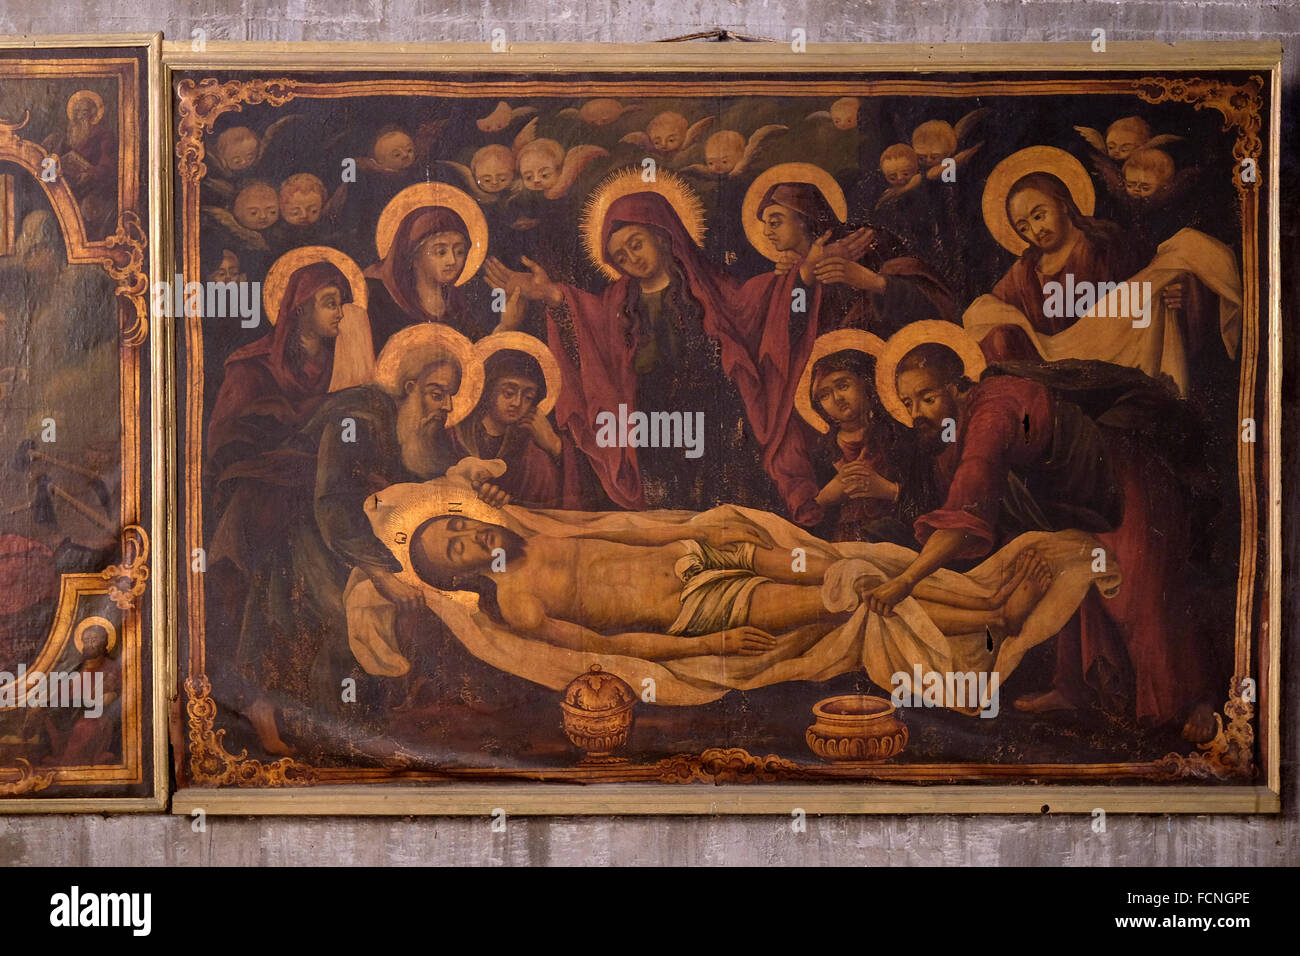 Peinture représentant le corps de Jésus-Christ préparé pour l'enterrement après Crucifixion pendu à l'intérieur de la Chapelle orthodoxe grecque Katholikon ou Catholicon dans l'Église du Saint-Sépulcre, dans la vieille ville de Jérusalem Israël Banque D'Images